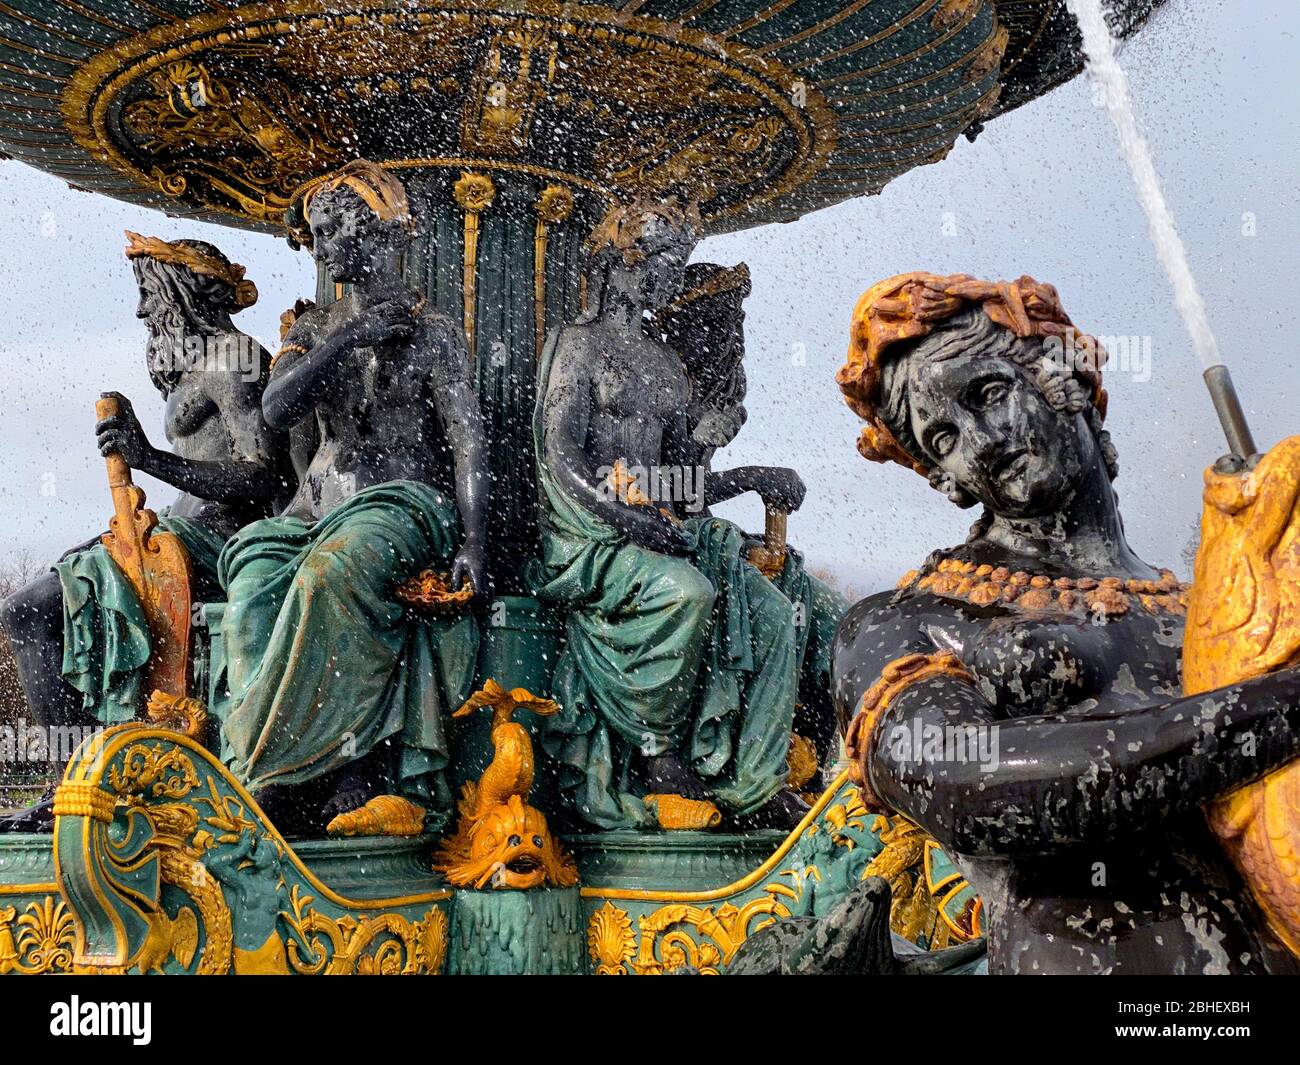 Fontana del dettaglio dei mari, Piazza della Concorde, Parigi, Francia - Fontaine des mers, Place de la Concorde, Parigi Foto Stock